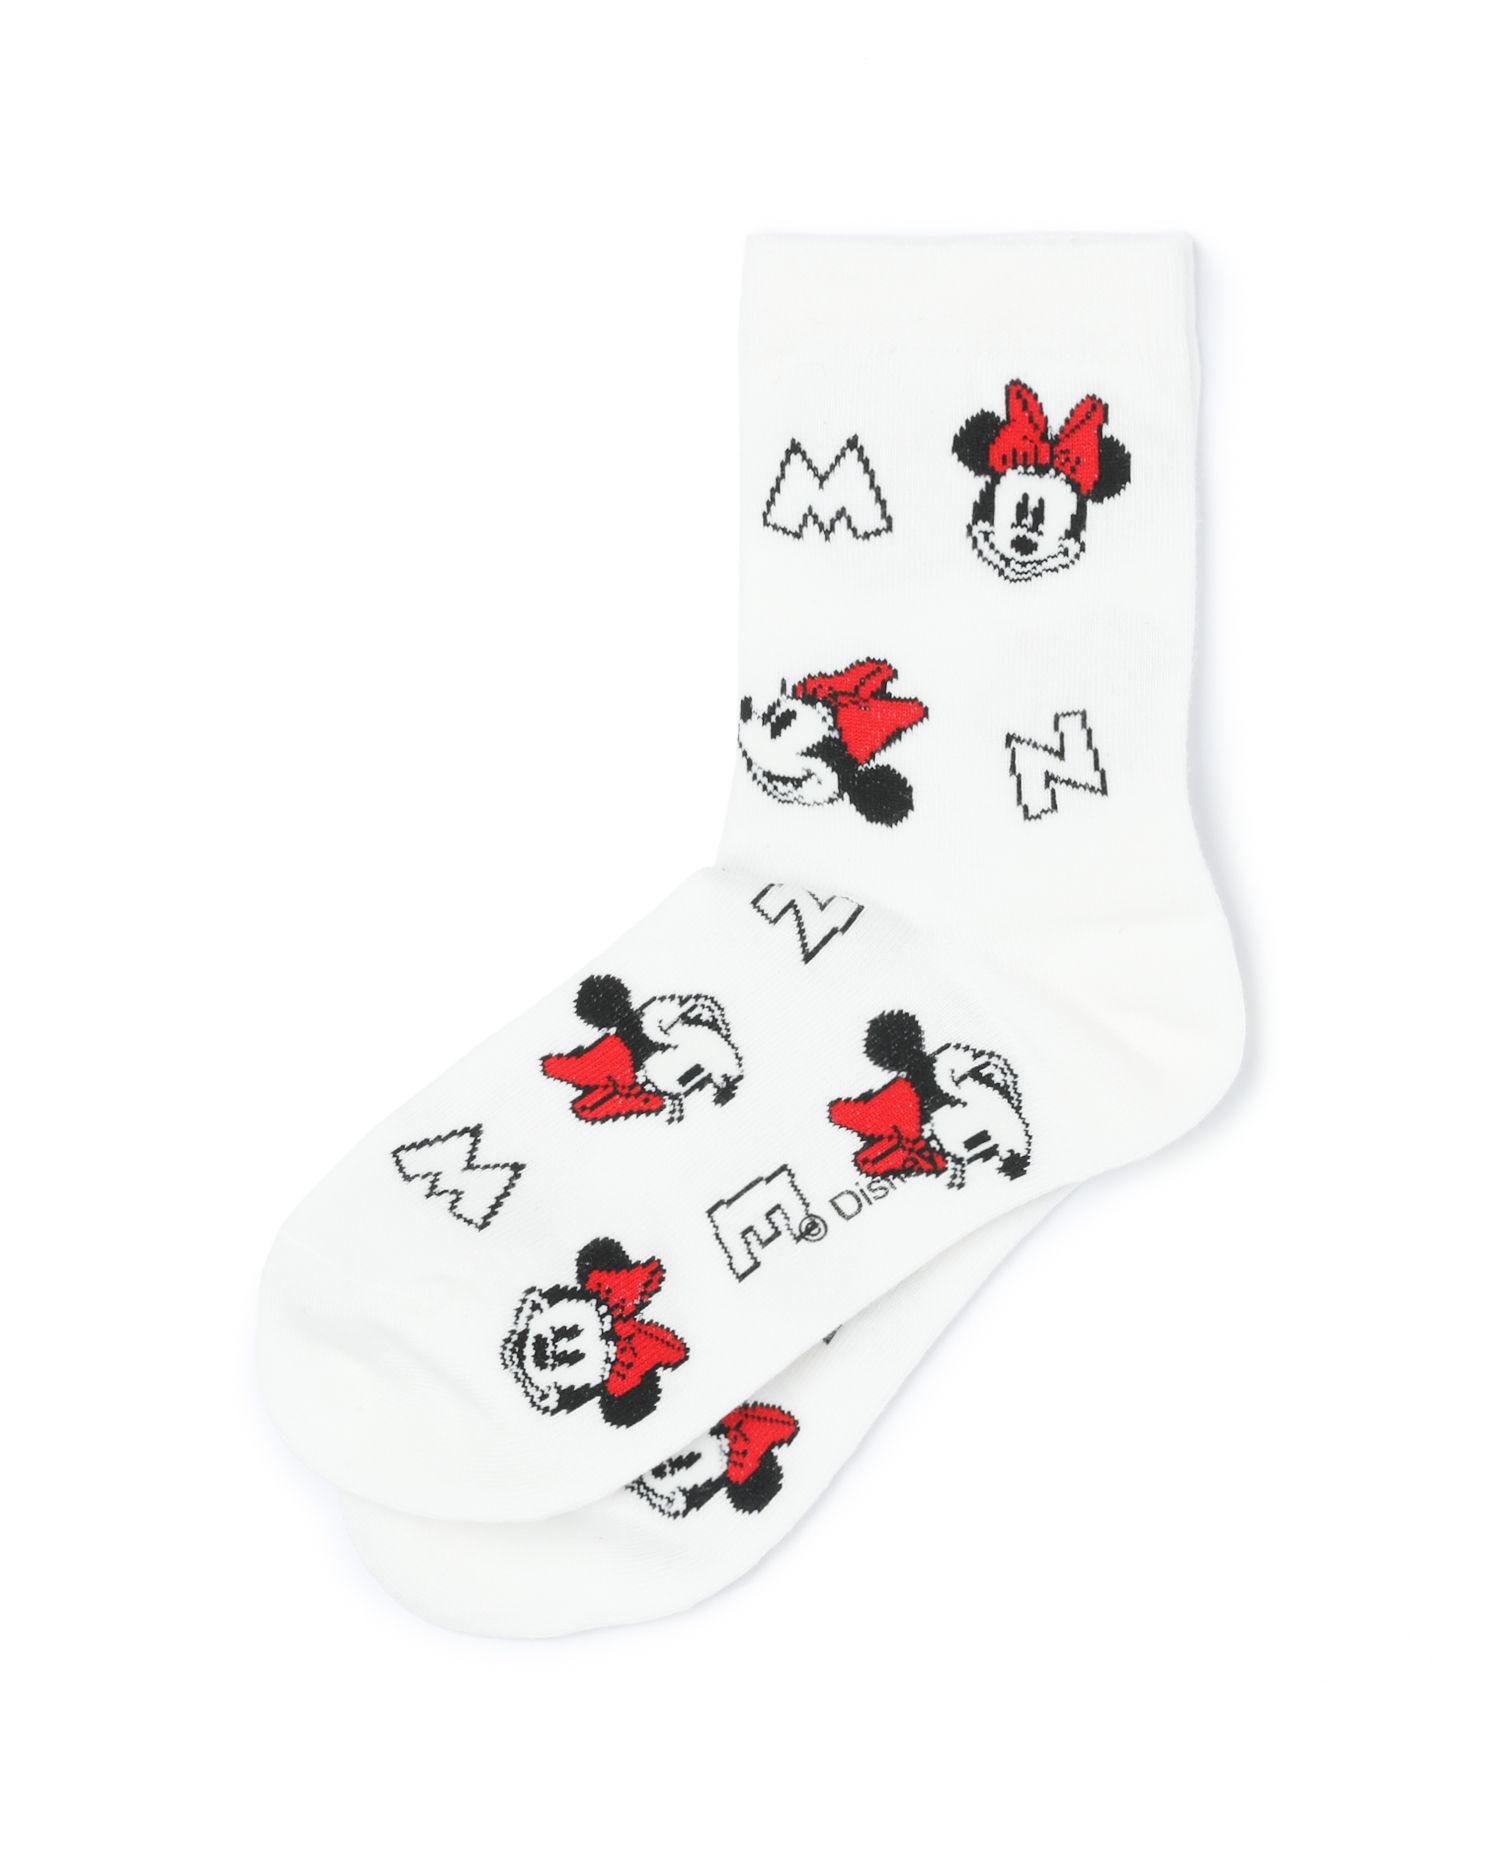 X Disney Minnie Mouse socks by CCAABB